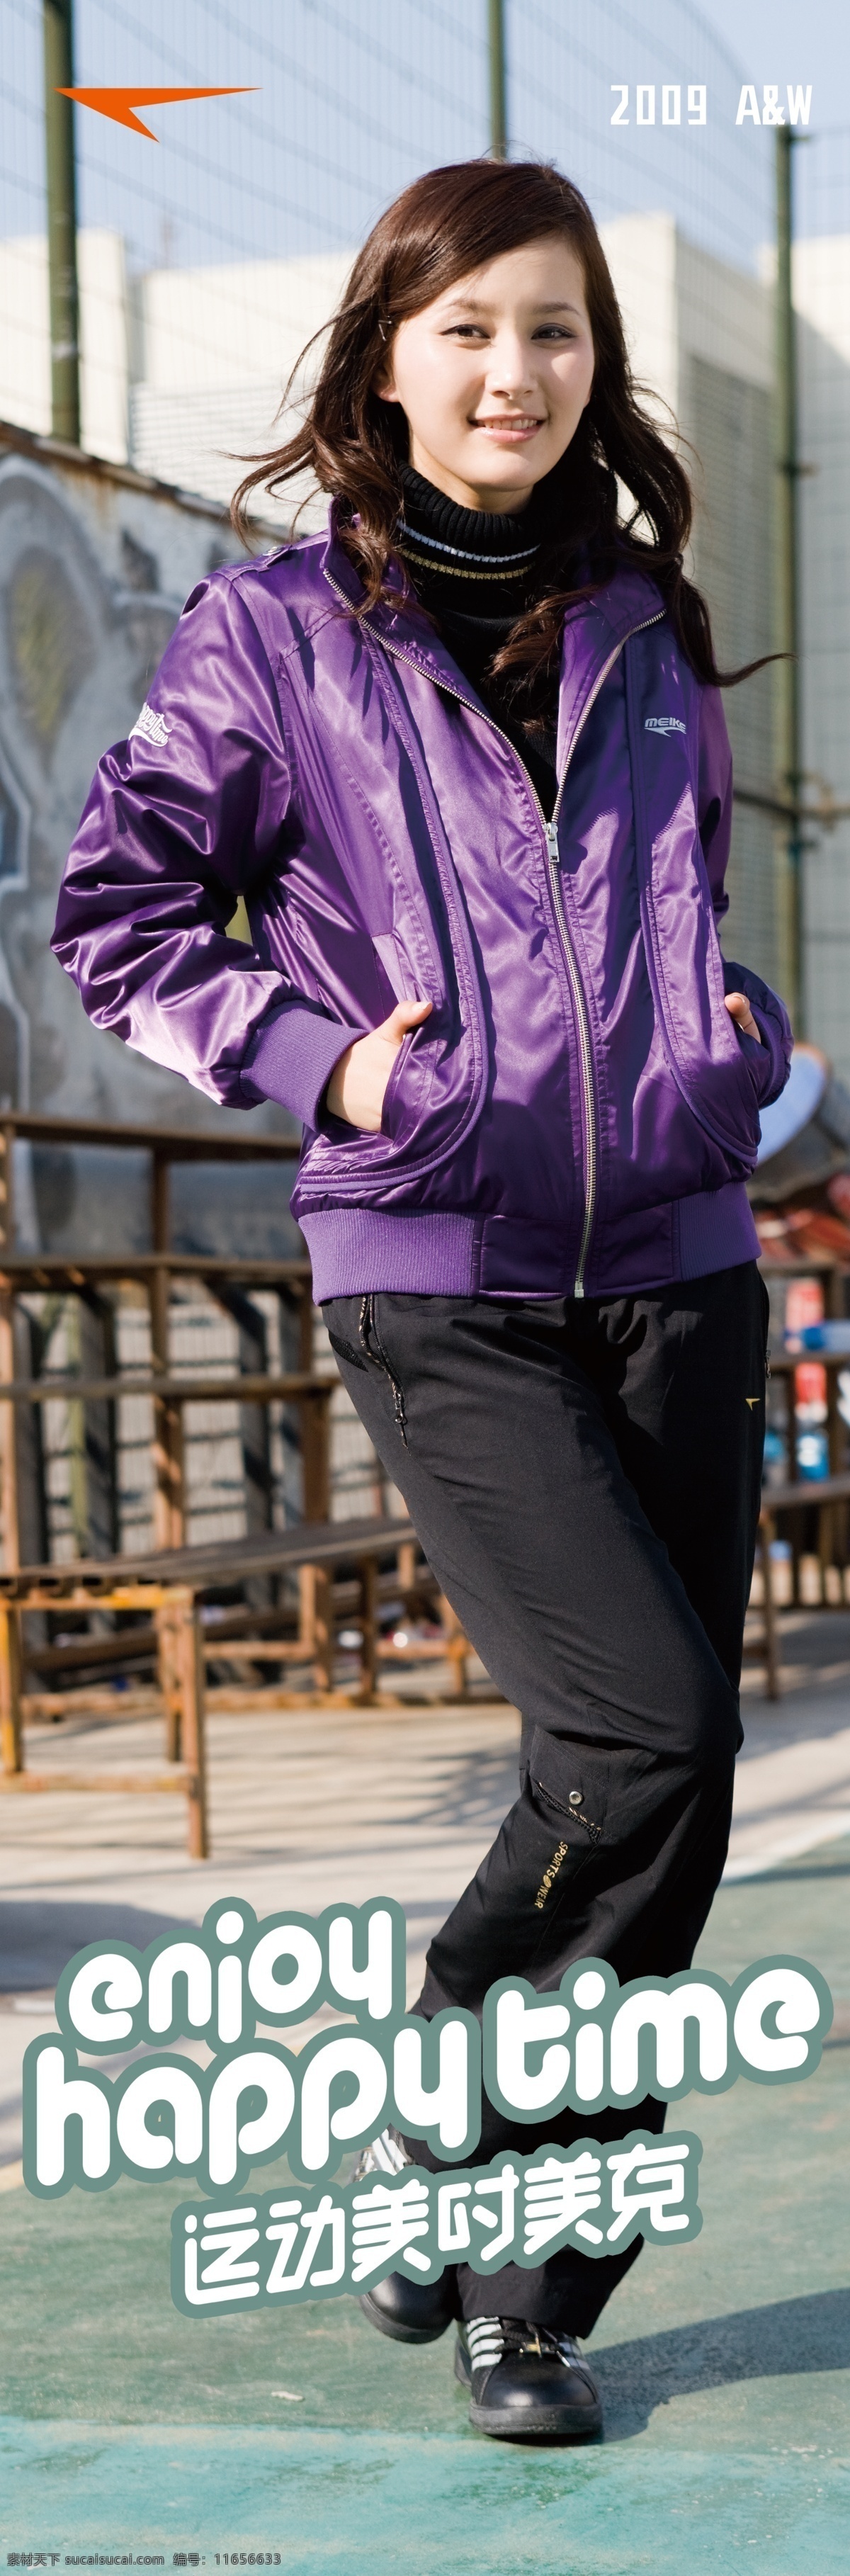 美克 冬季 服装 女 模特 分层 人物 源文件 紫色衣服 黑色裤子 黑色鞋子 淘宝素材 淘宝冬季促销